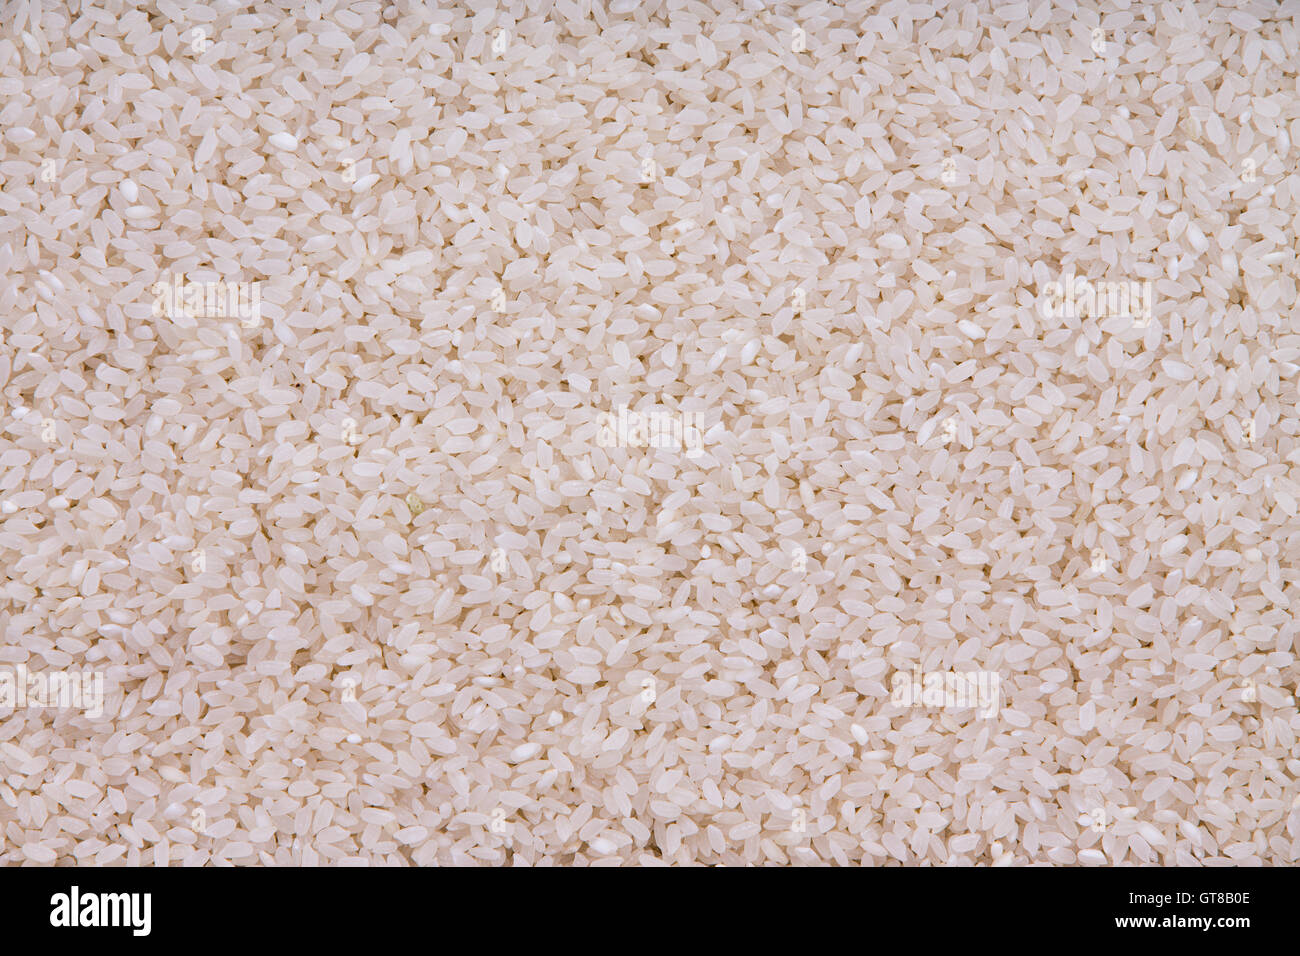 La texture de fond de riz étuvé à grain long grains qui ont été mondés et partiellement cuite d'accélérer le temps de cuisson, d'un s Banque D'Images